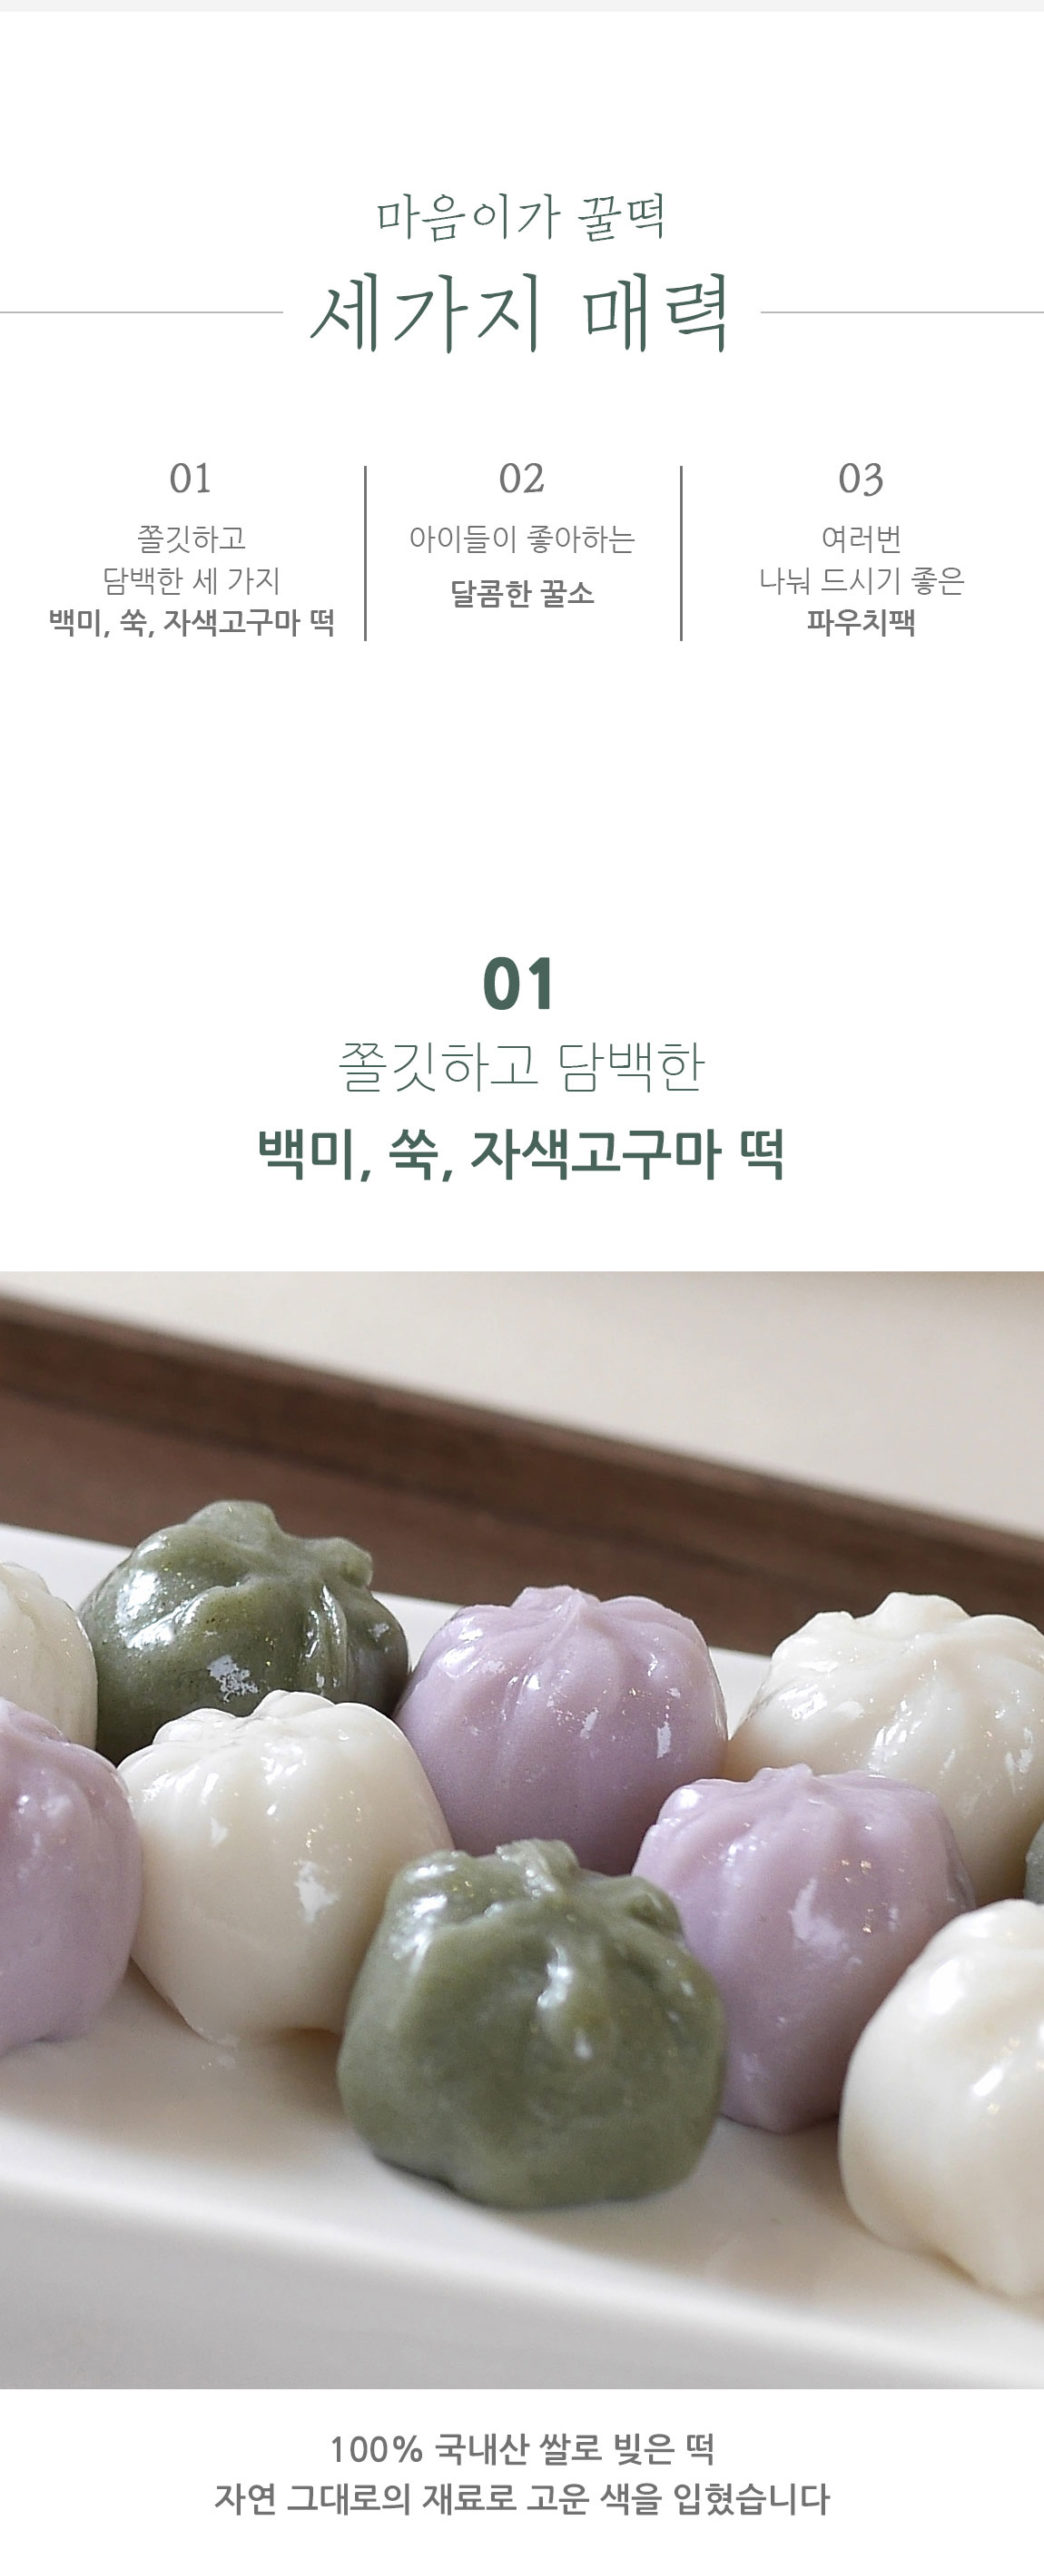 韓國食品-[Mauminga] 蜜糖年糕 350g